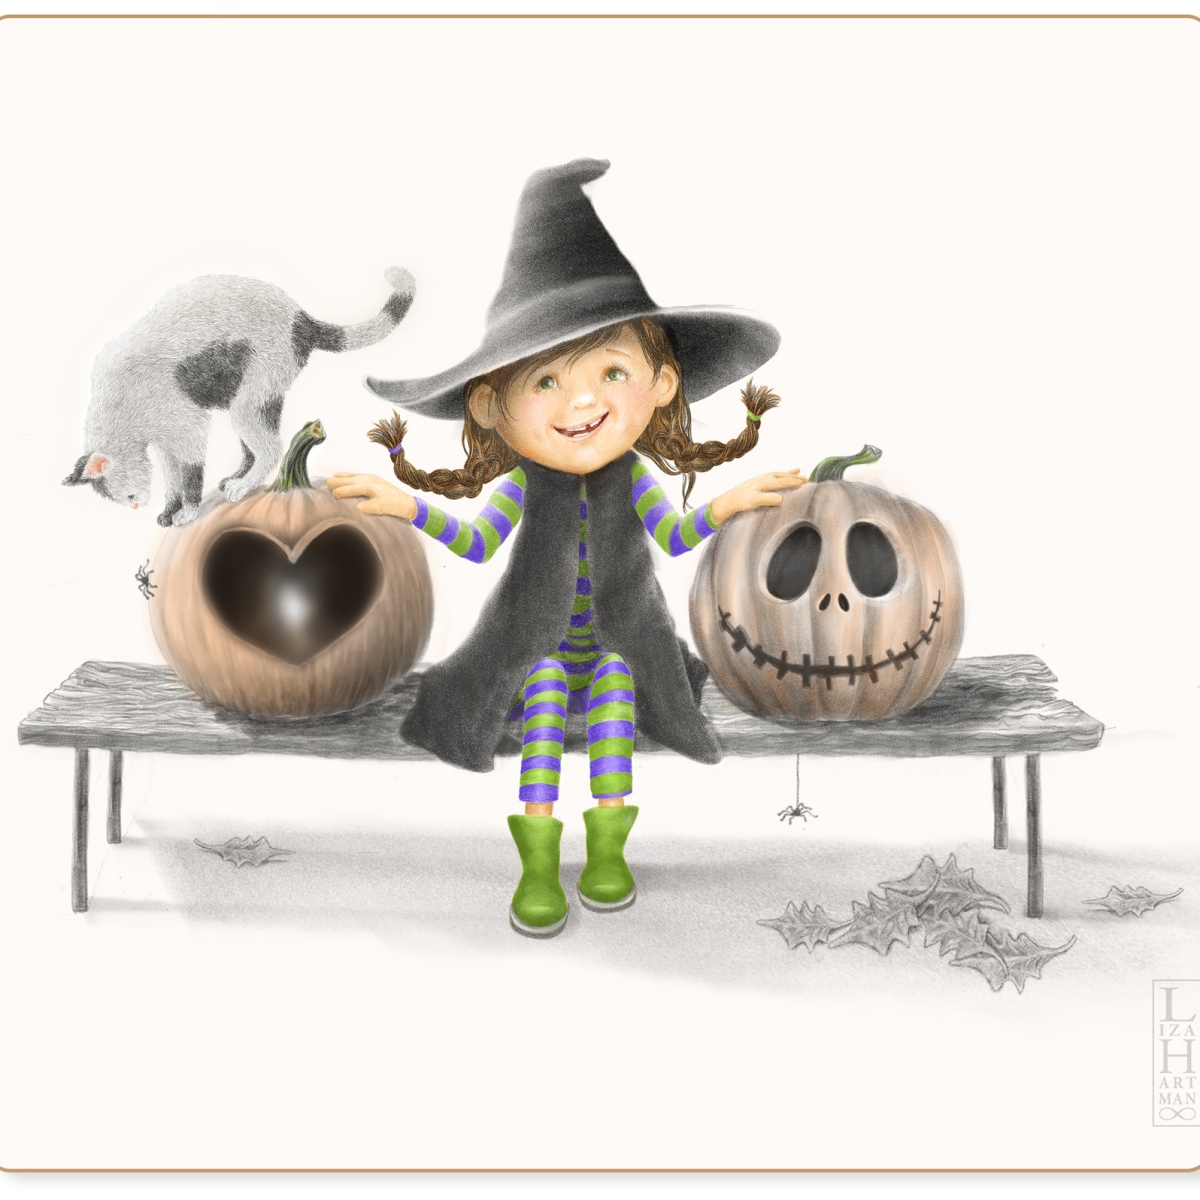 Illustration – Happy Halloween!